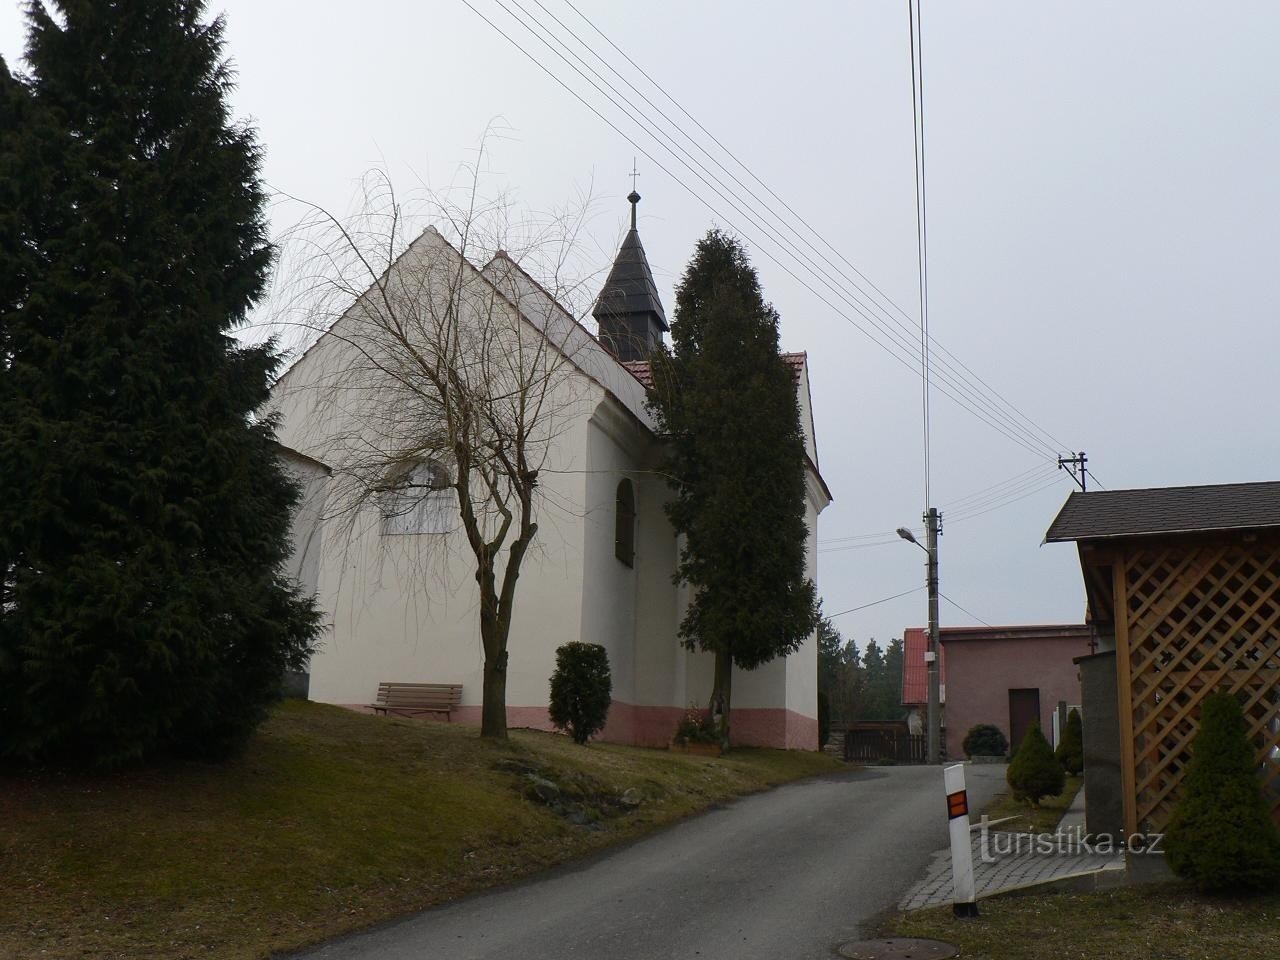 Kladruby, capela do leste